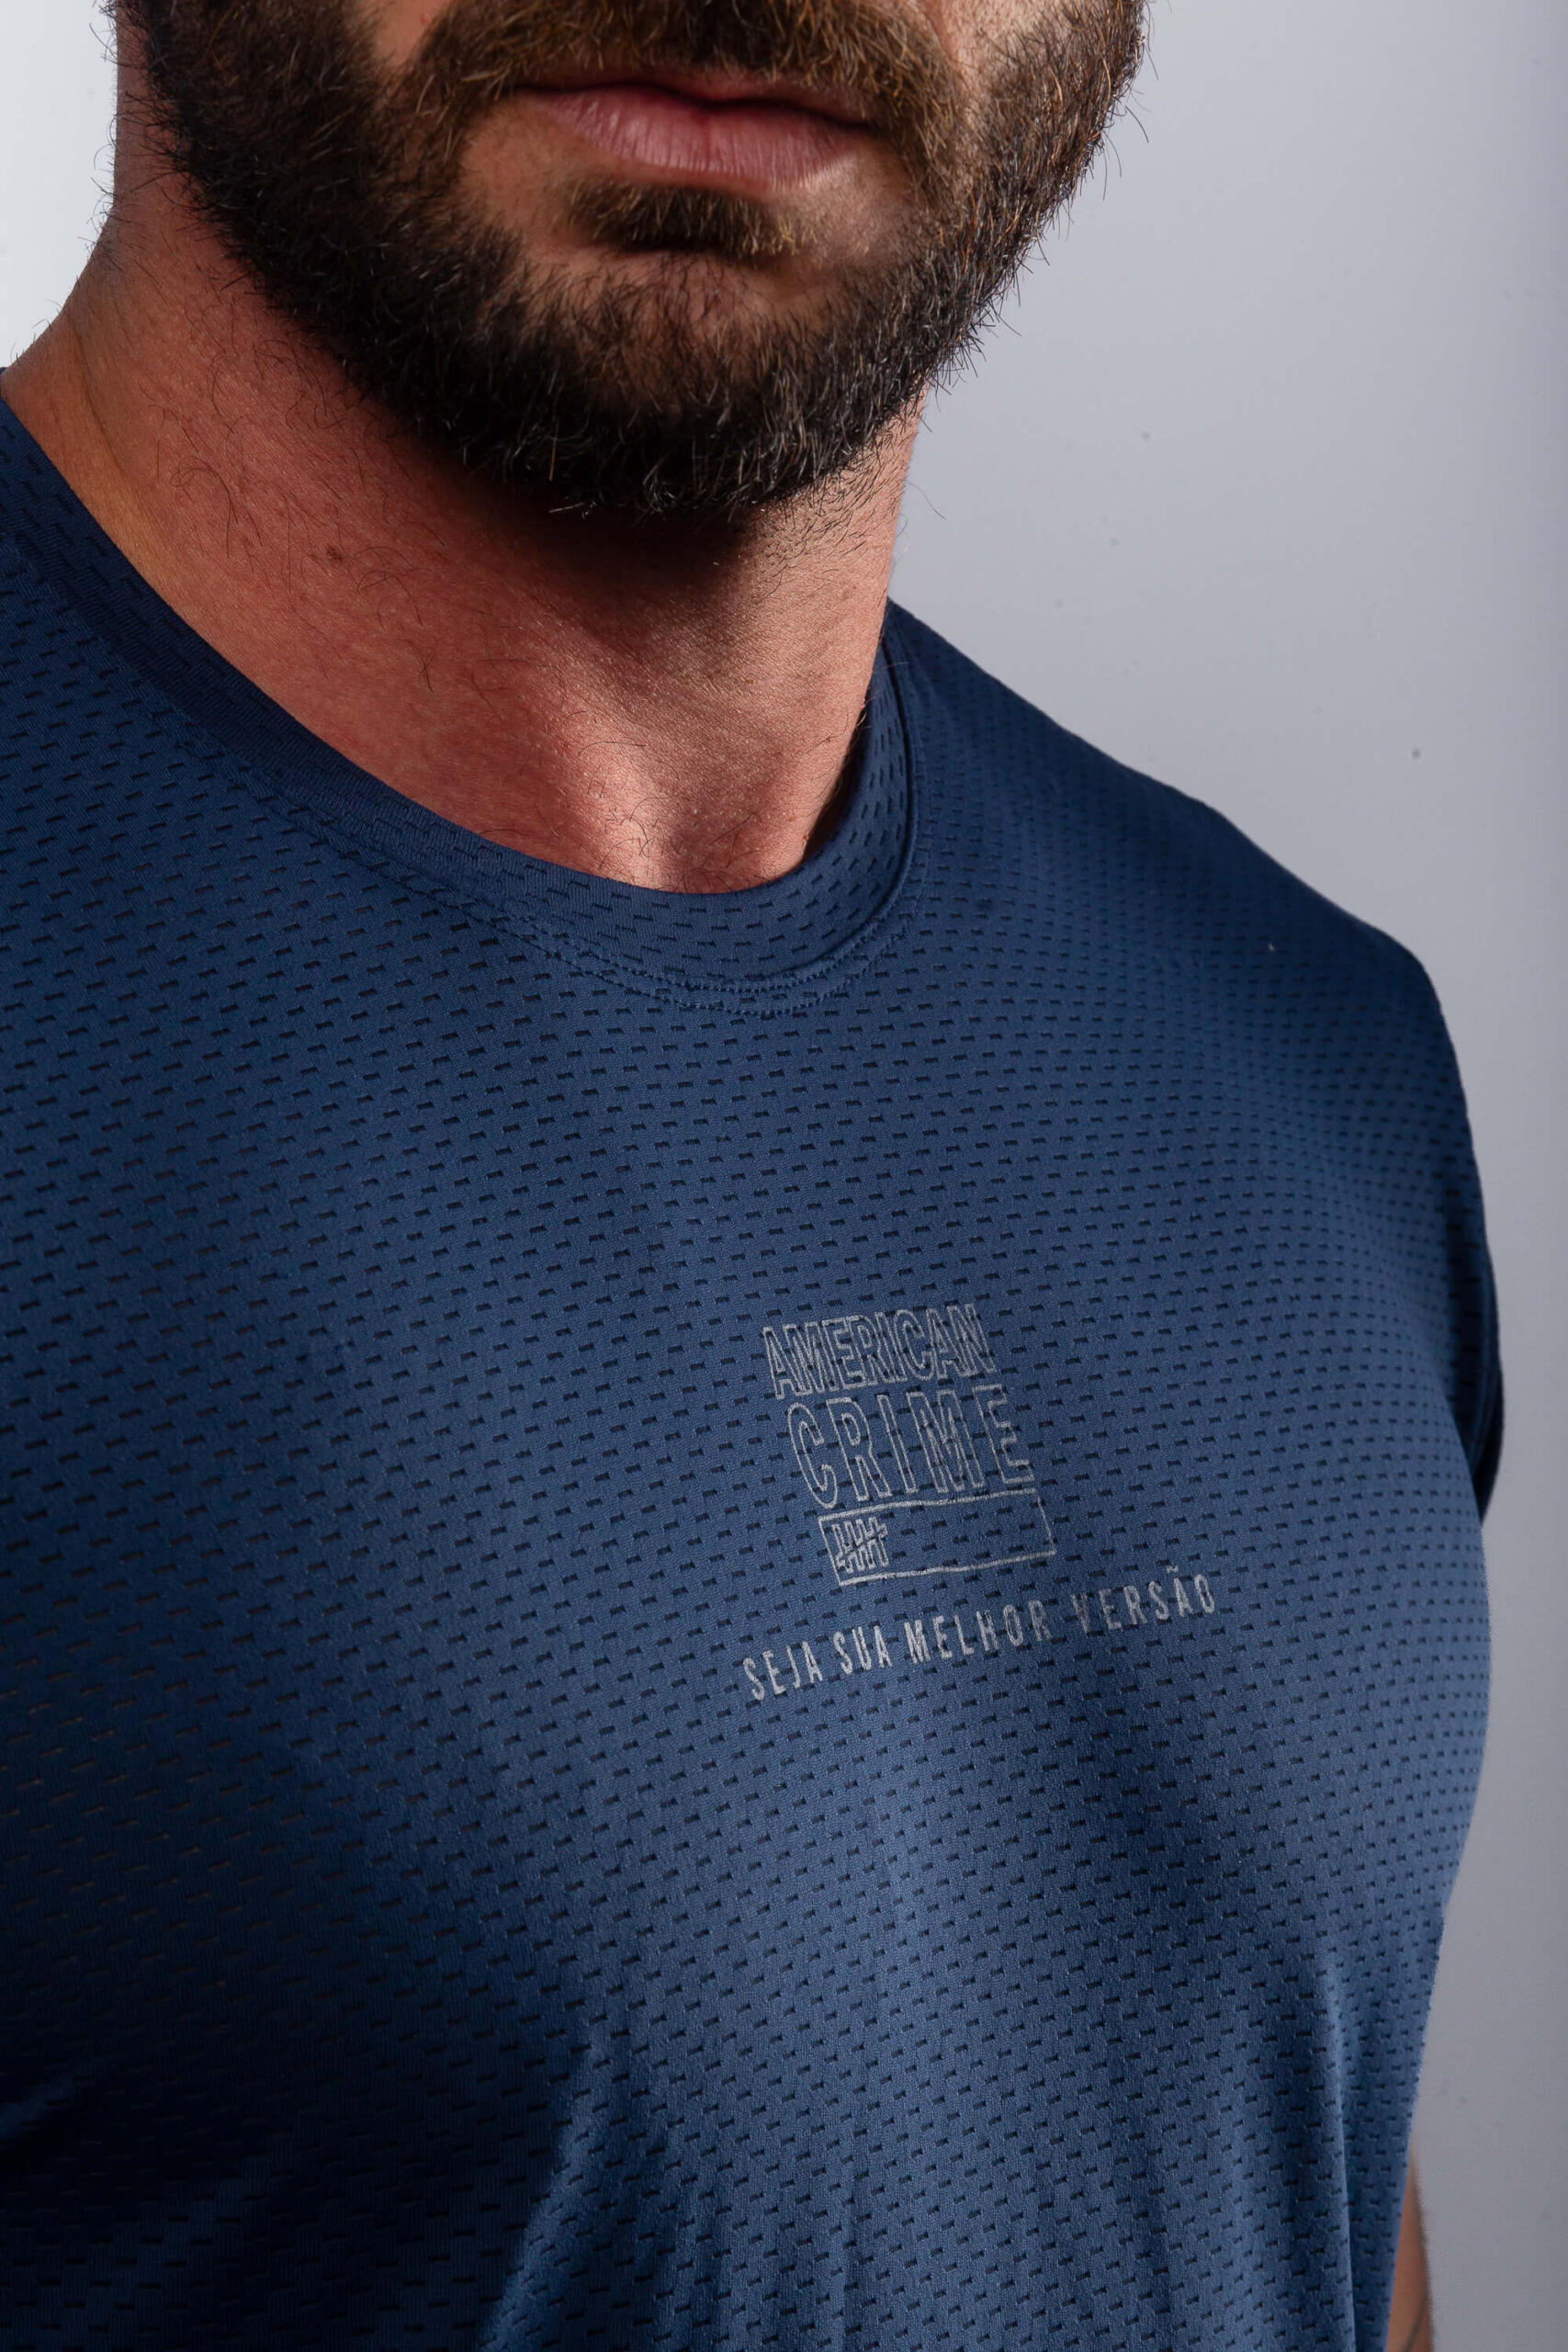 Camiseta Training Air Redesign Navy Blue Melhor Versão